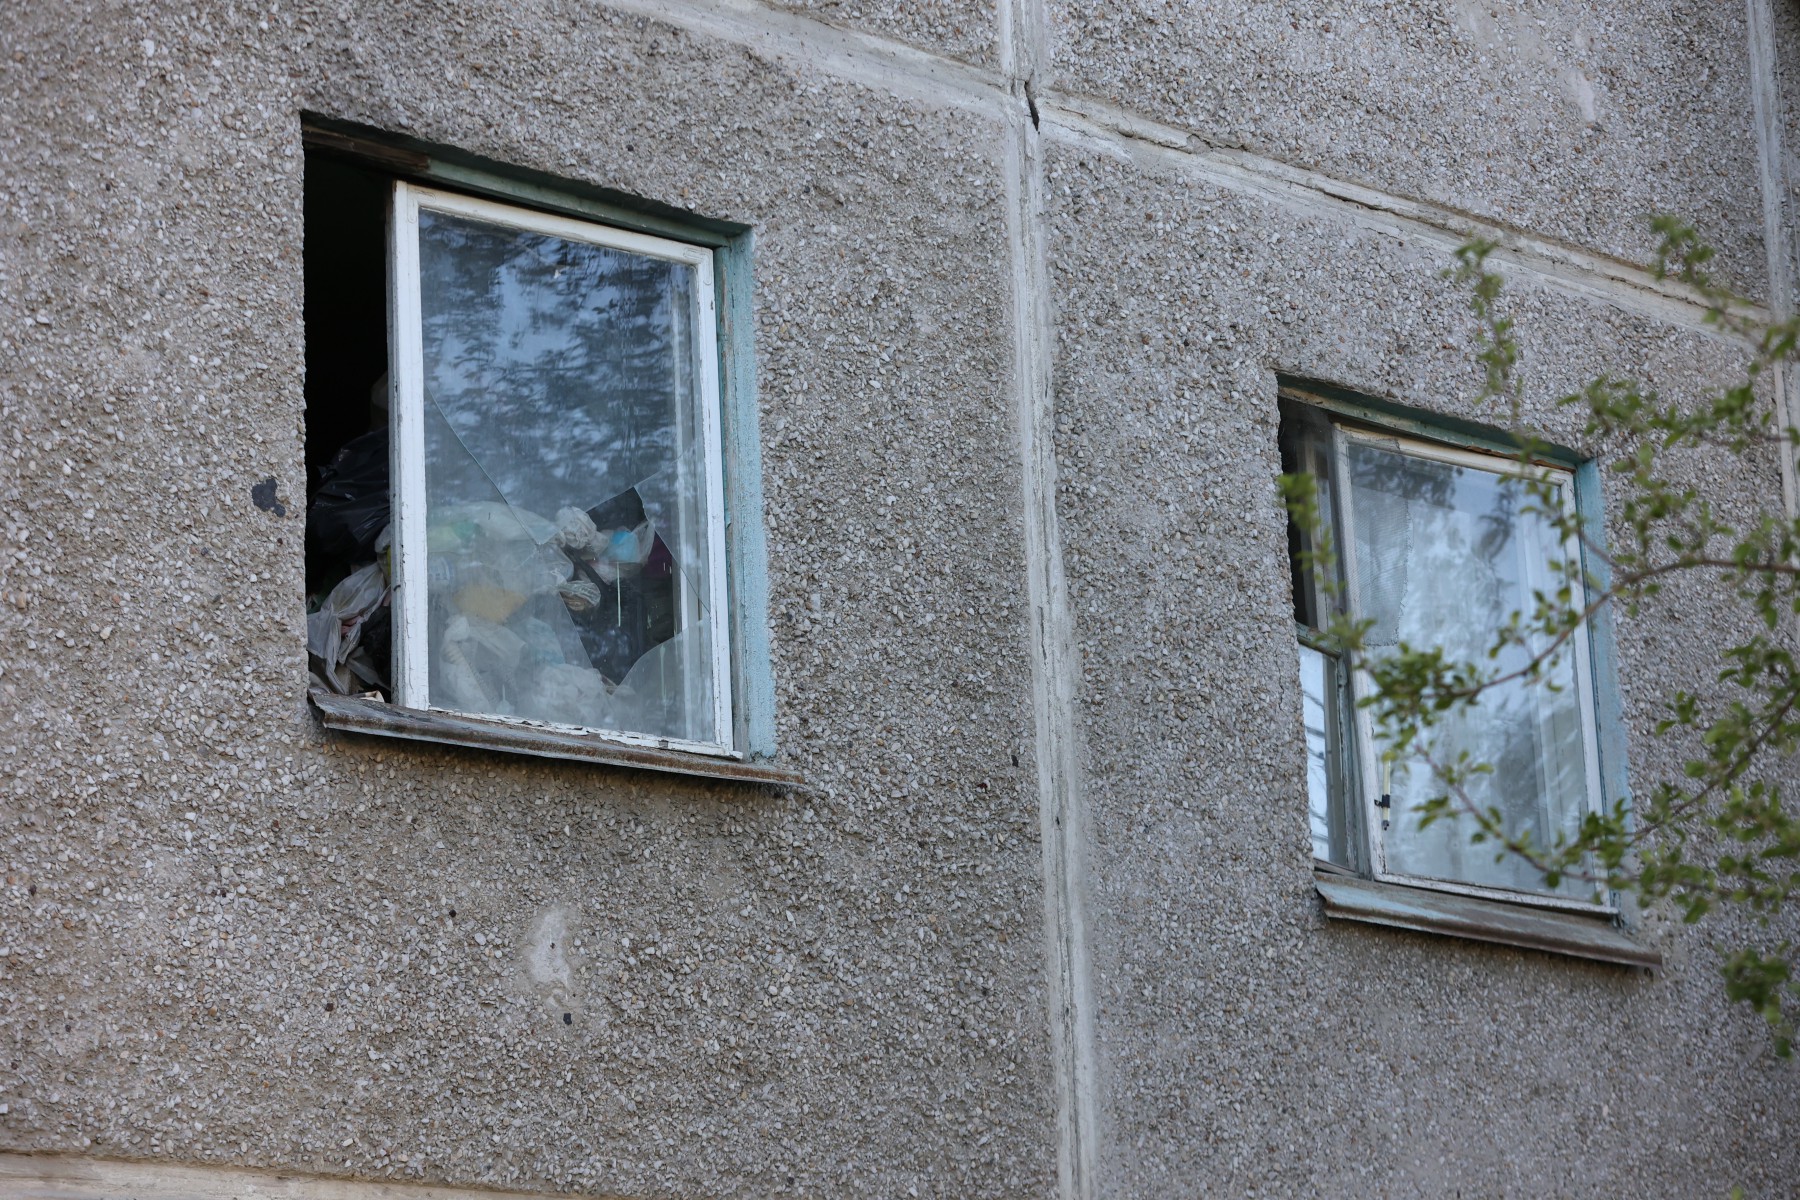 Вот так выглядит окно злополучной квартиры с улицы. Нетрудно догадаться, что творится внутри. Фото Владимира Коцюбы-Белых